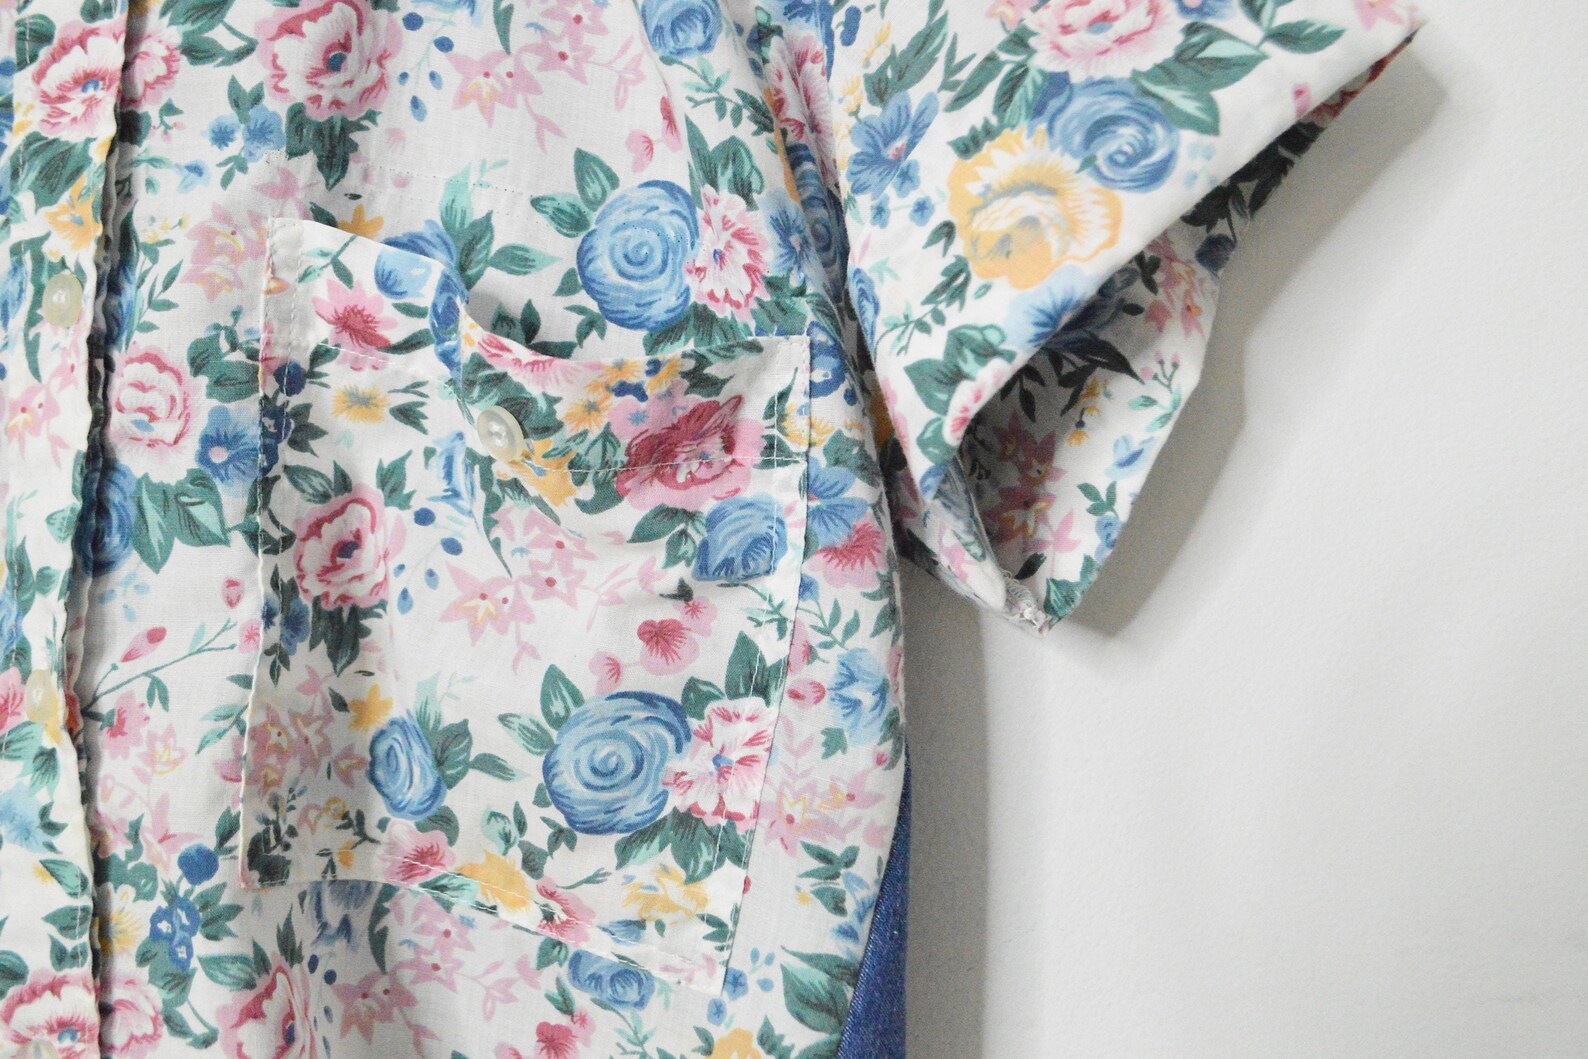 Cropped floral blouse vintage cottagecore top button up blouse | Etsy